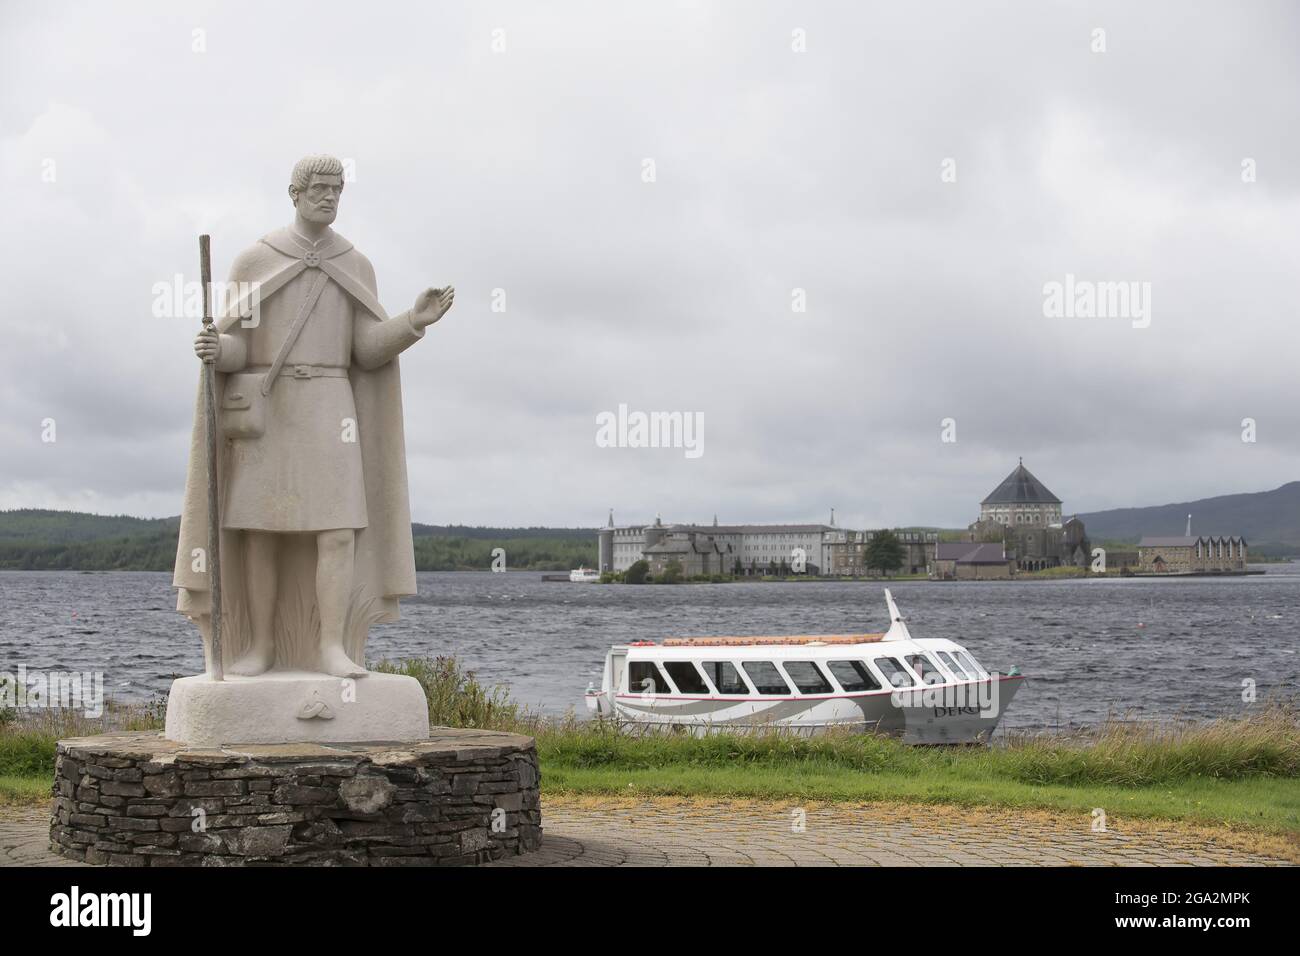 Statue de St Patrick et bateau sur les rives de Lough Derg, avec le site de Pilgrim du Purgatory de St Patrick sur Station Island en arrière-plan Banque D'Images